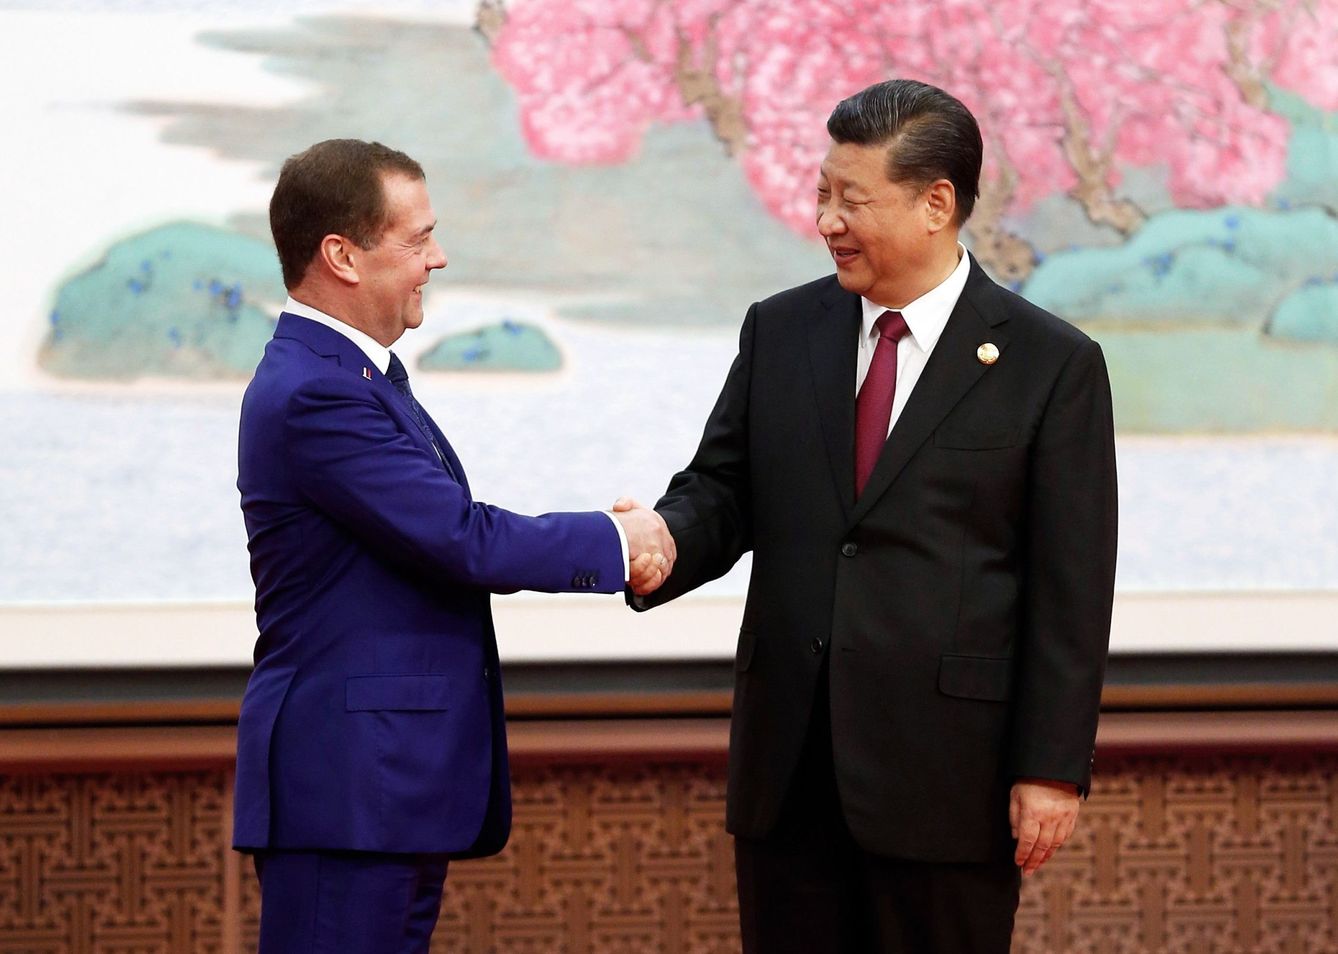 El primer ministro ruso, Dmitry Medvedev (i), estrecha la mano del presidente chino, Xi Jingping (d), durante una feria internacional de comercio. (EFE)